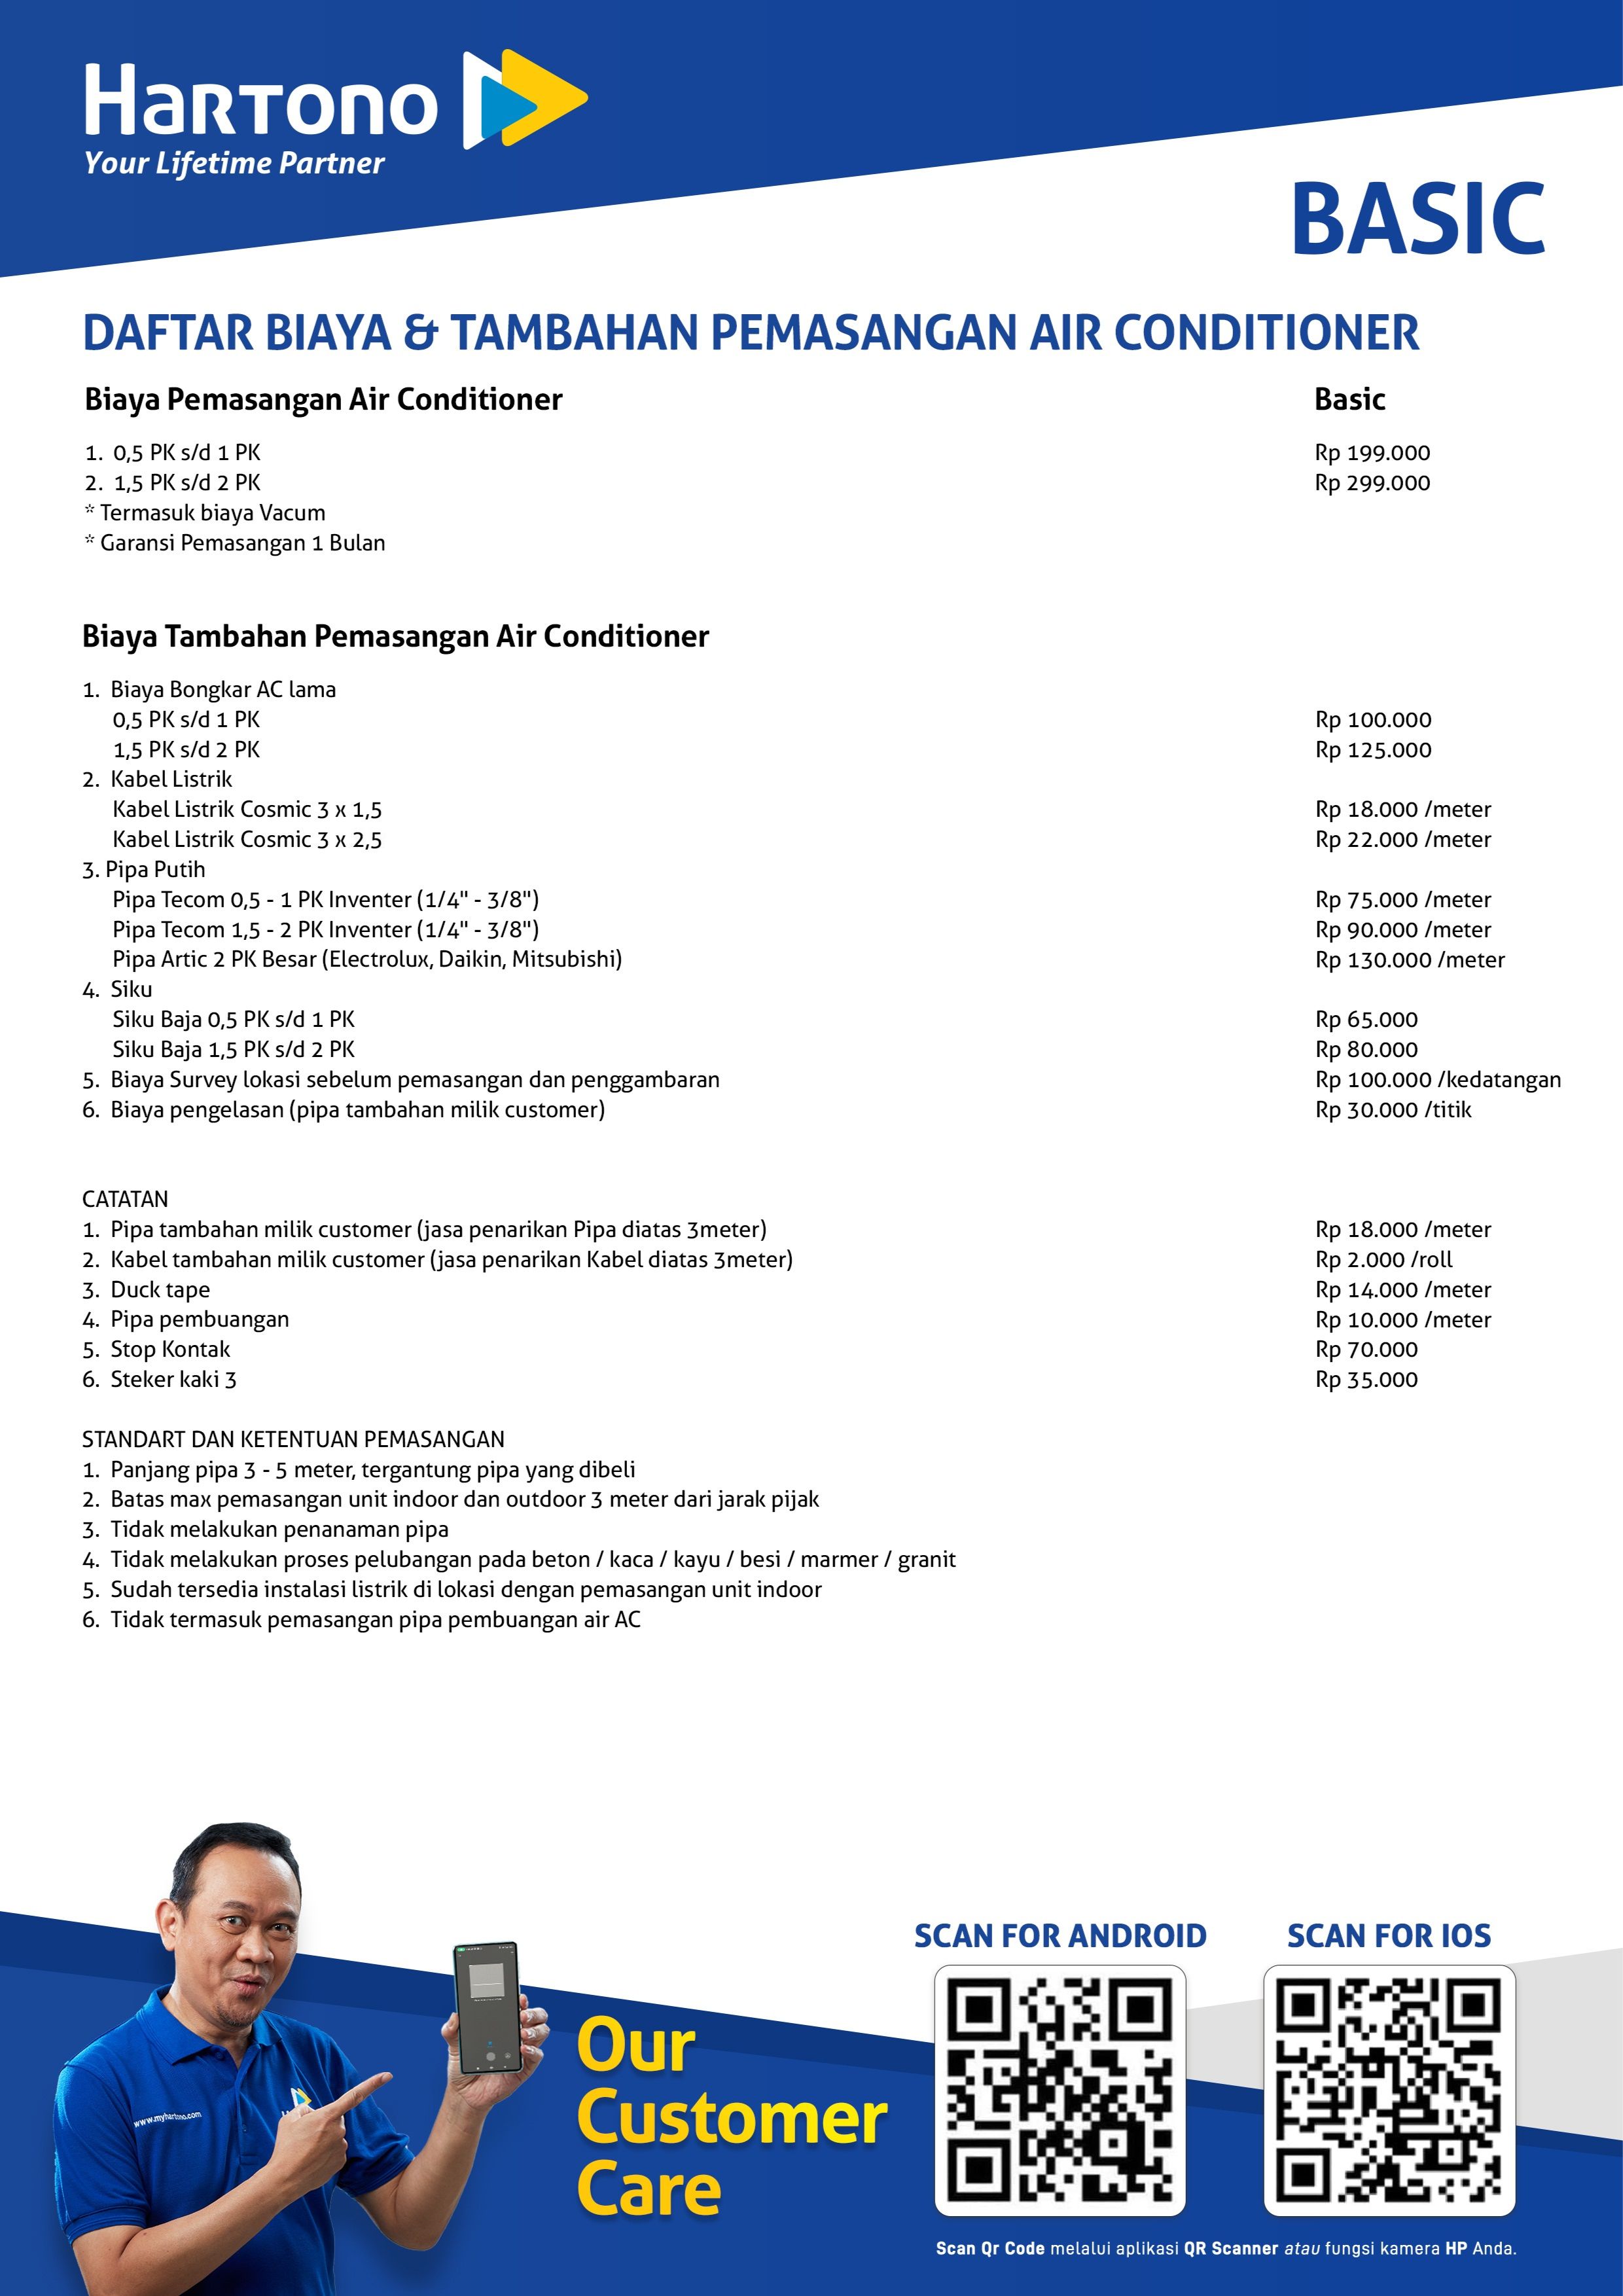 Daftar Biaya & Tambahan Pemasangan Air Conditioner Wilayah Jakarta Kategori Basic